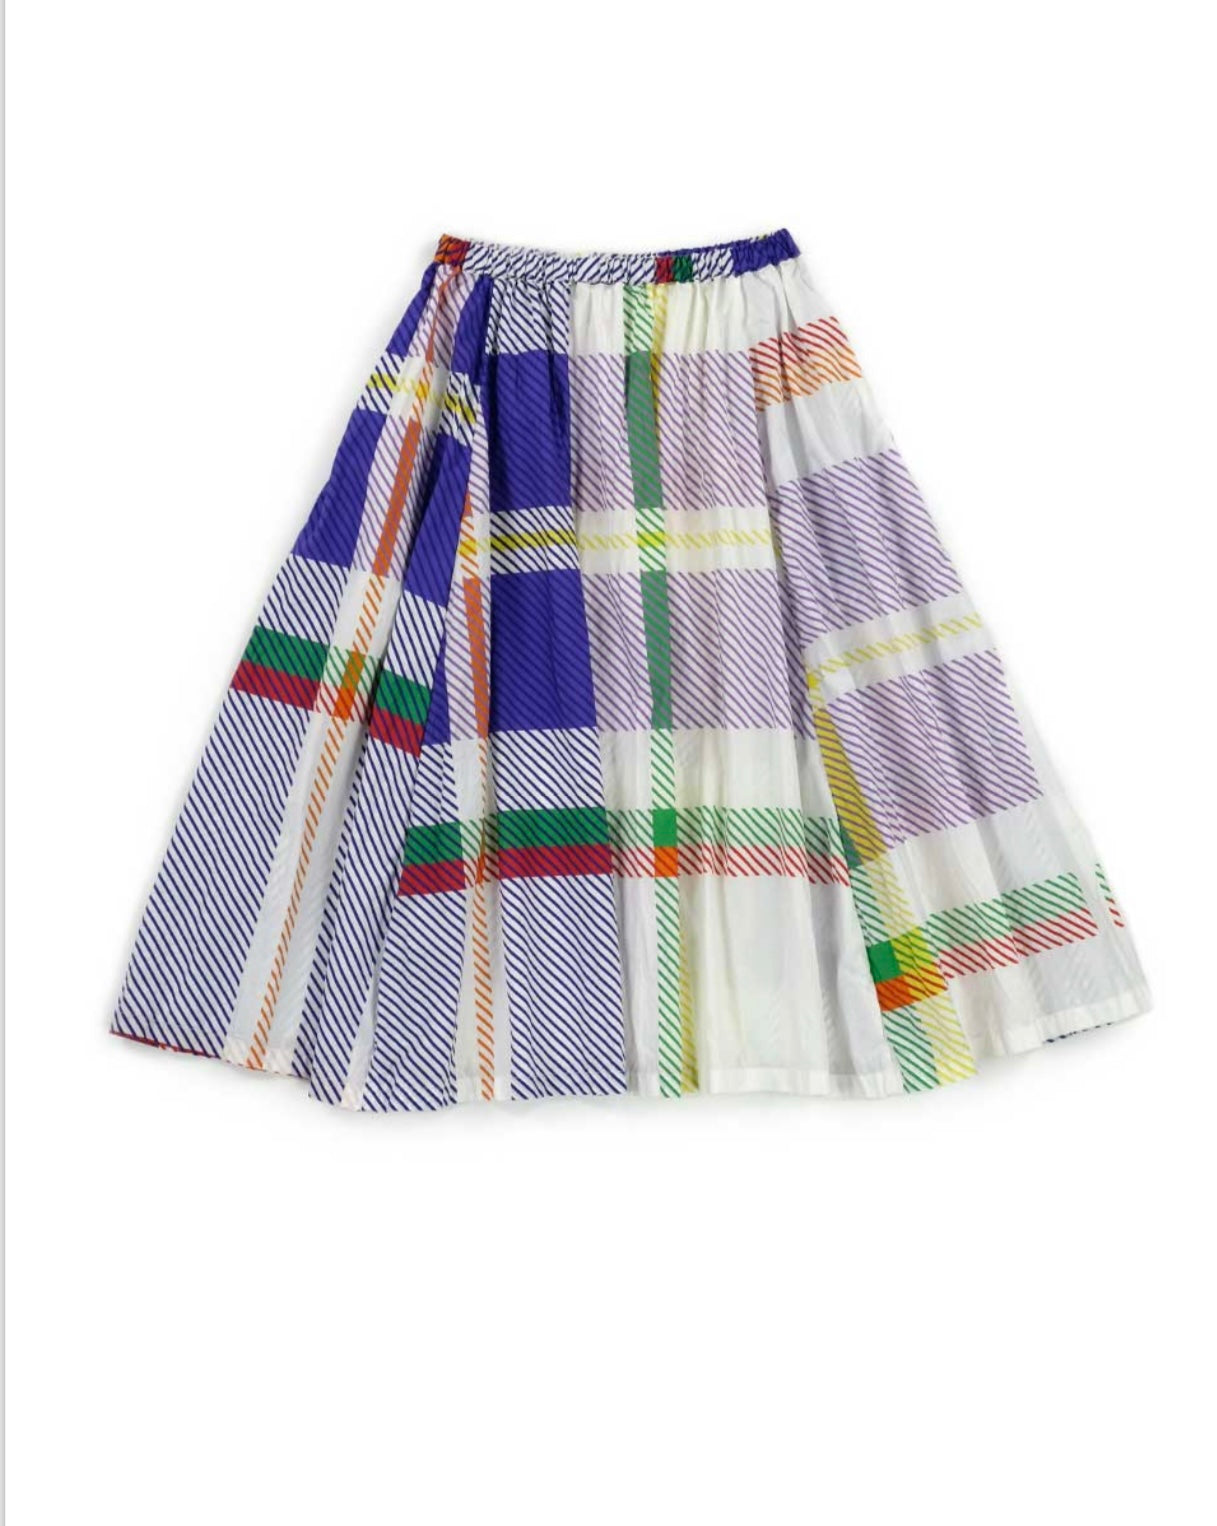 Manuelle Guibal - Patterned Long Skirt